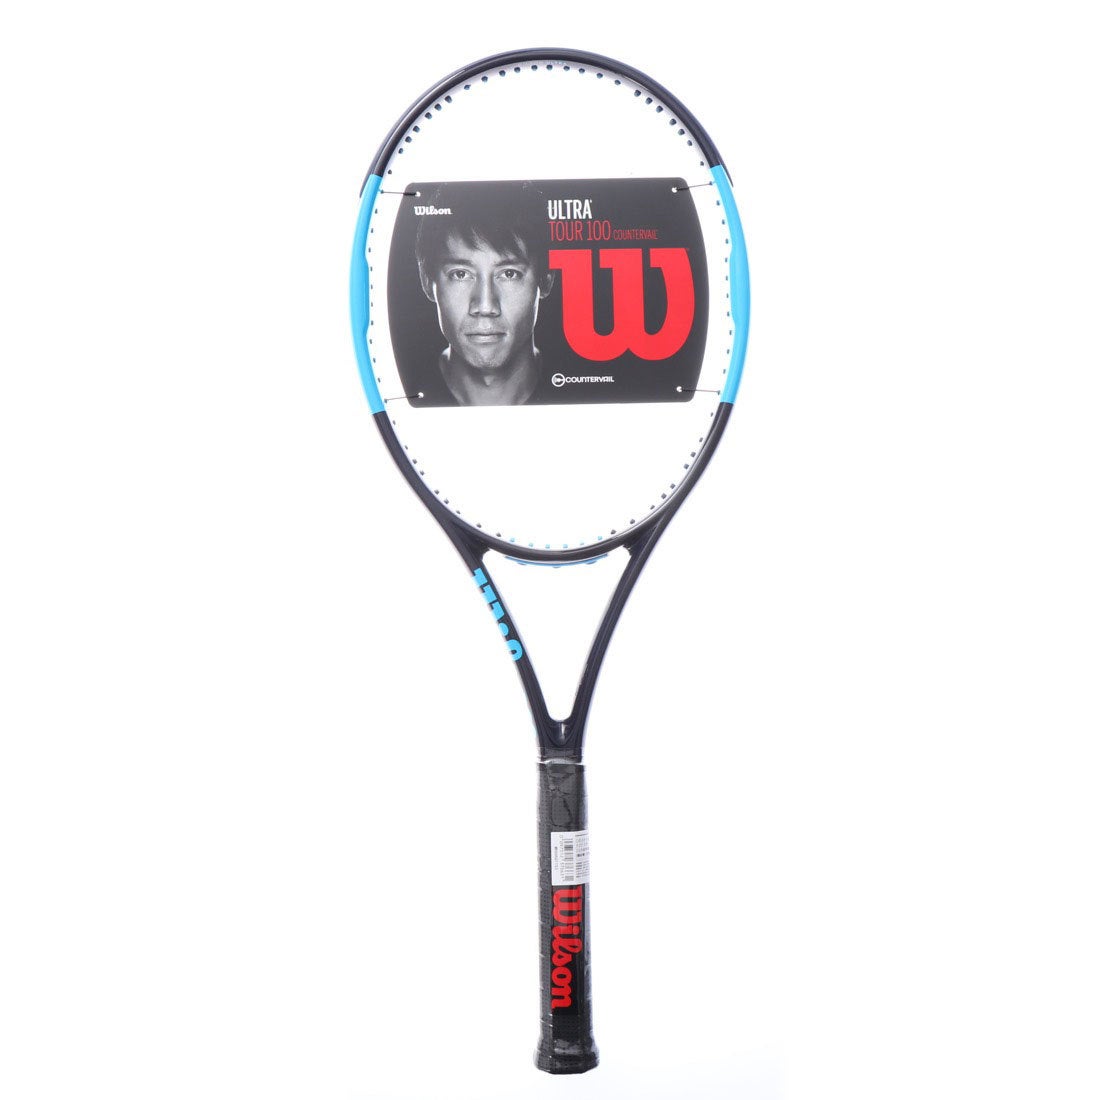 ウィルソン ULTRA TOUR 100CV WR006011 (テニスラケット) 価格比較 